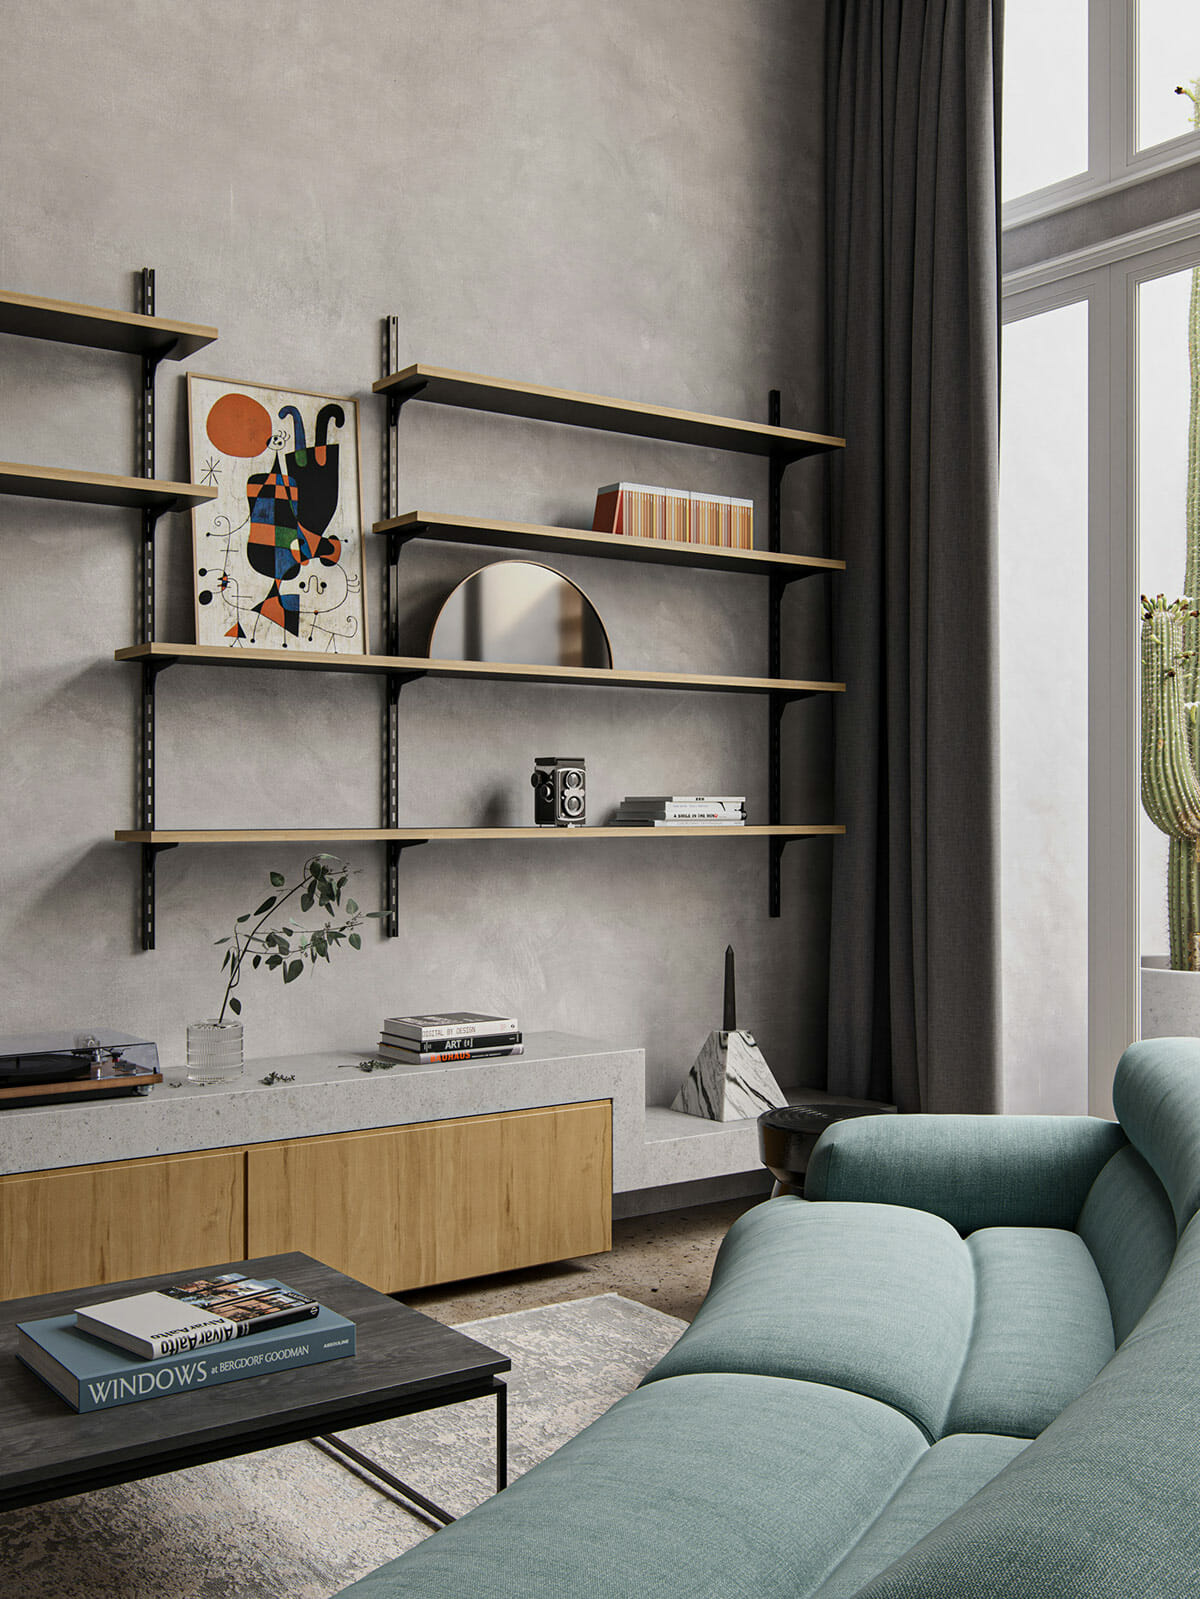 Hình ảnh phòng khách căn hộ hiện đại với tường bê tông màu xám, ghế sofa màu xanh ngọc, bàn trà nhỏ màu đen, kệ gỗ gắn tường